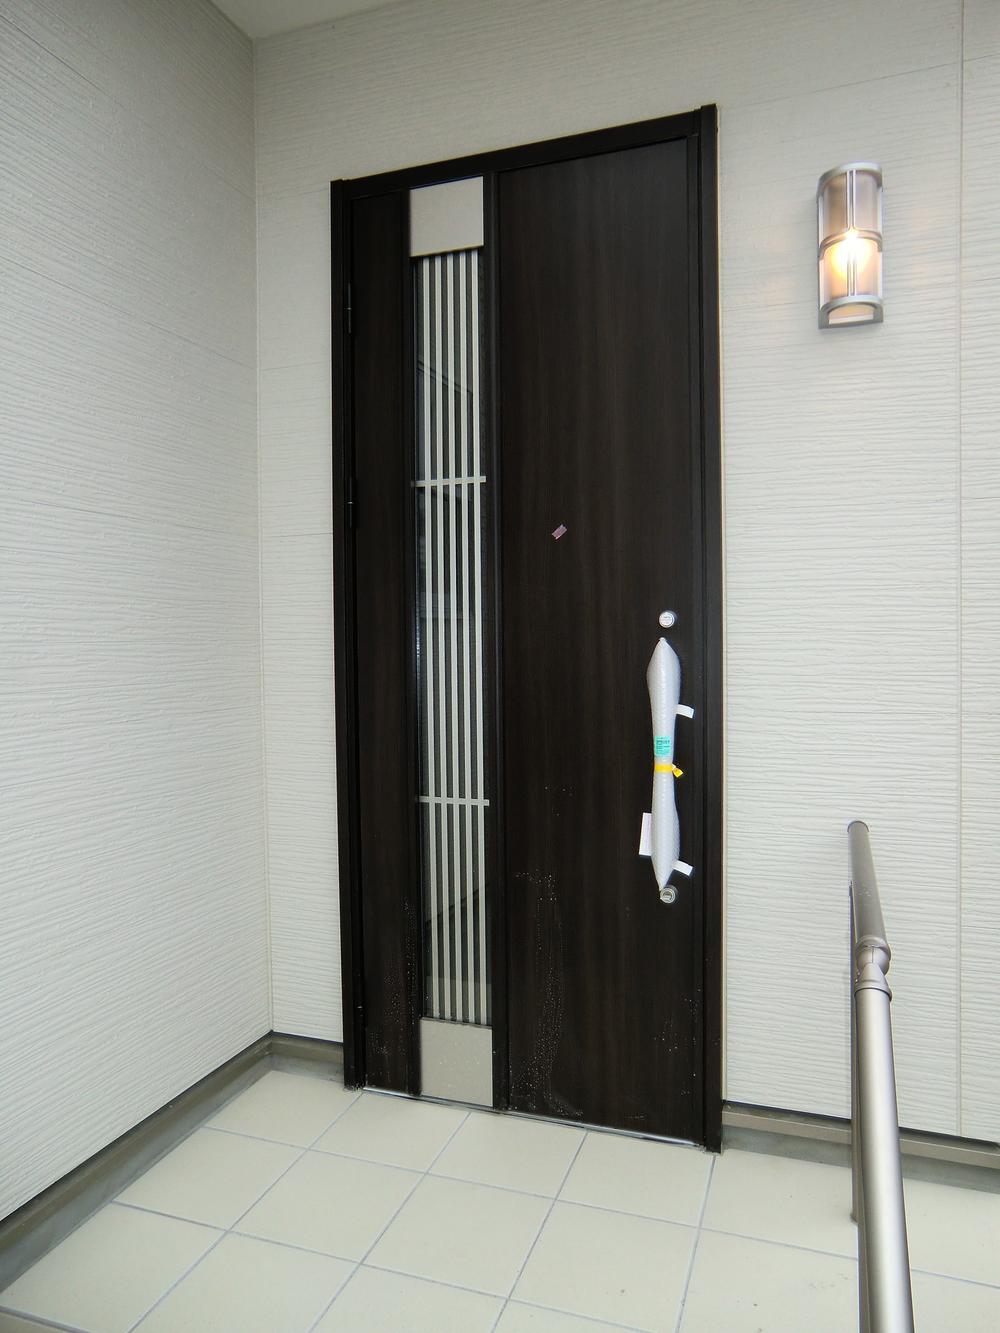 Entrance. ◇ entrance door ◇  Picking measures with door